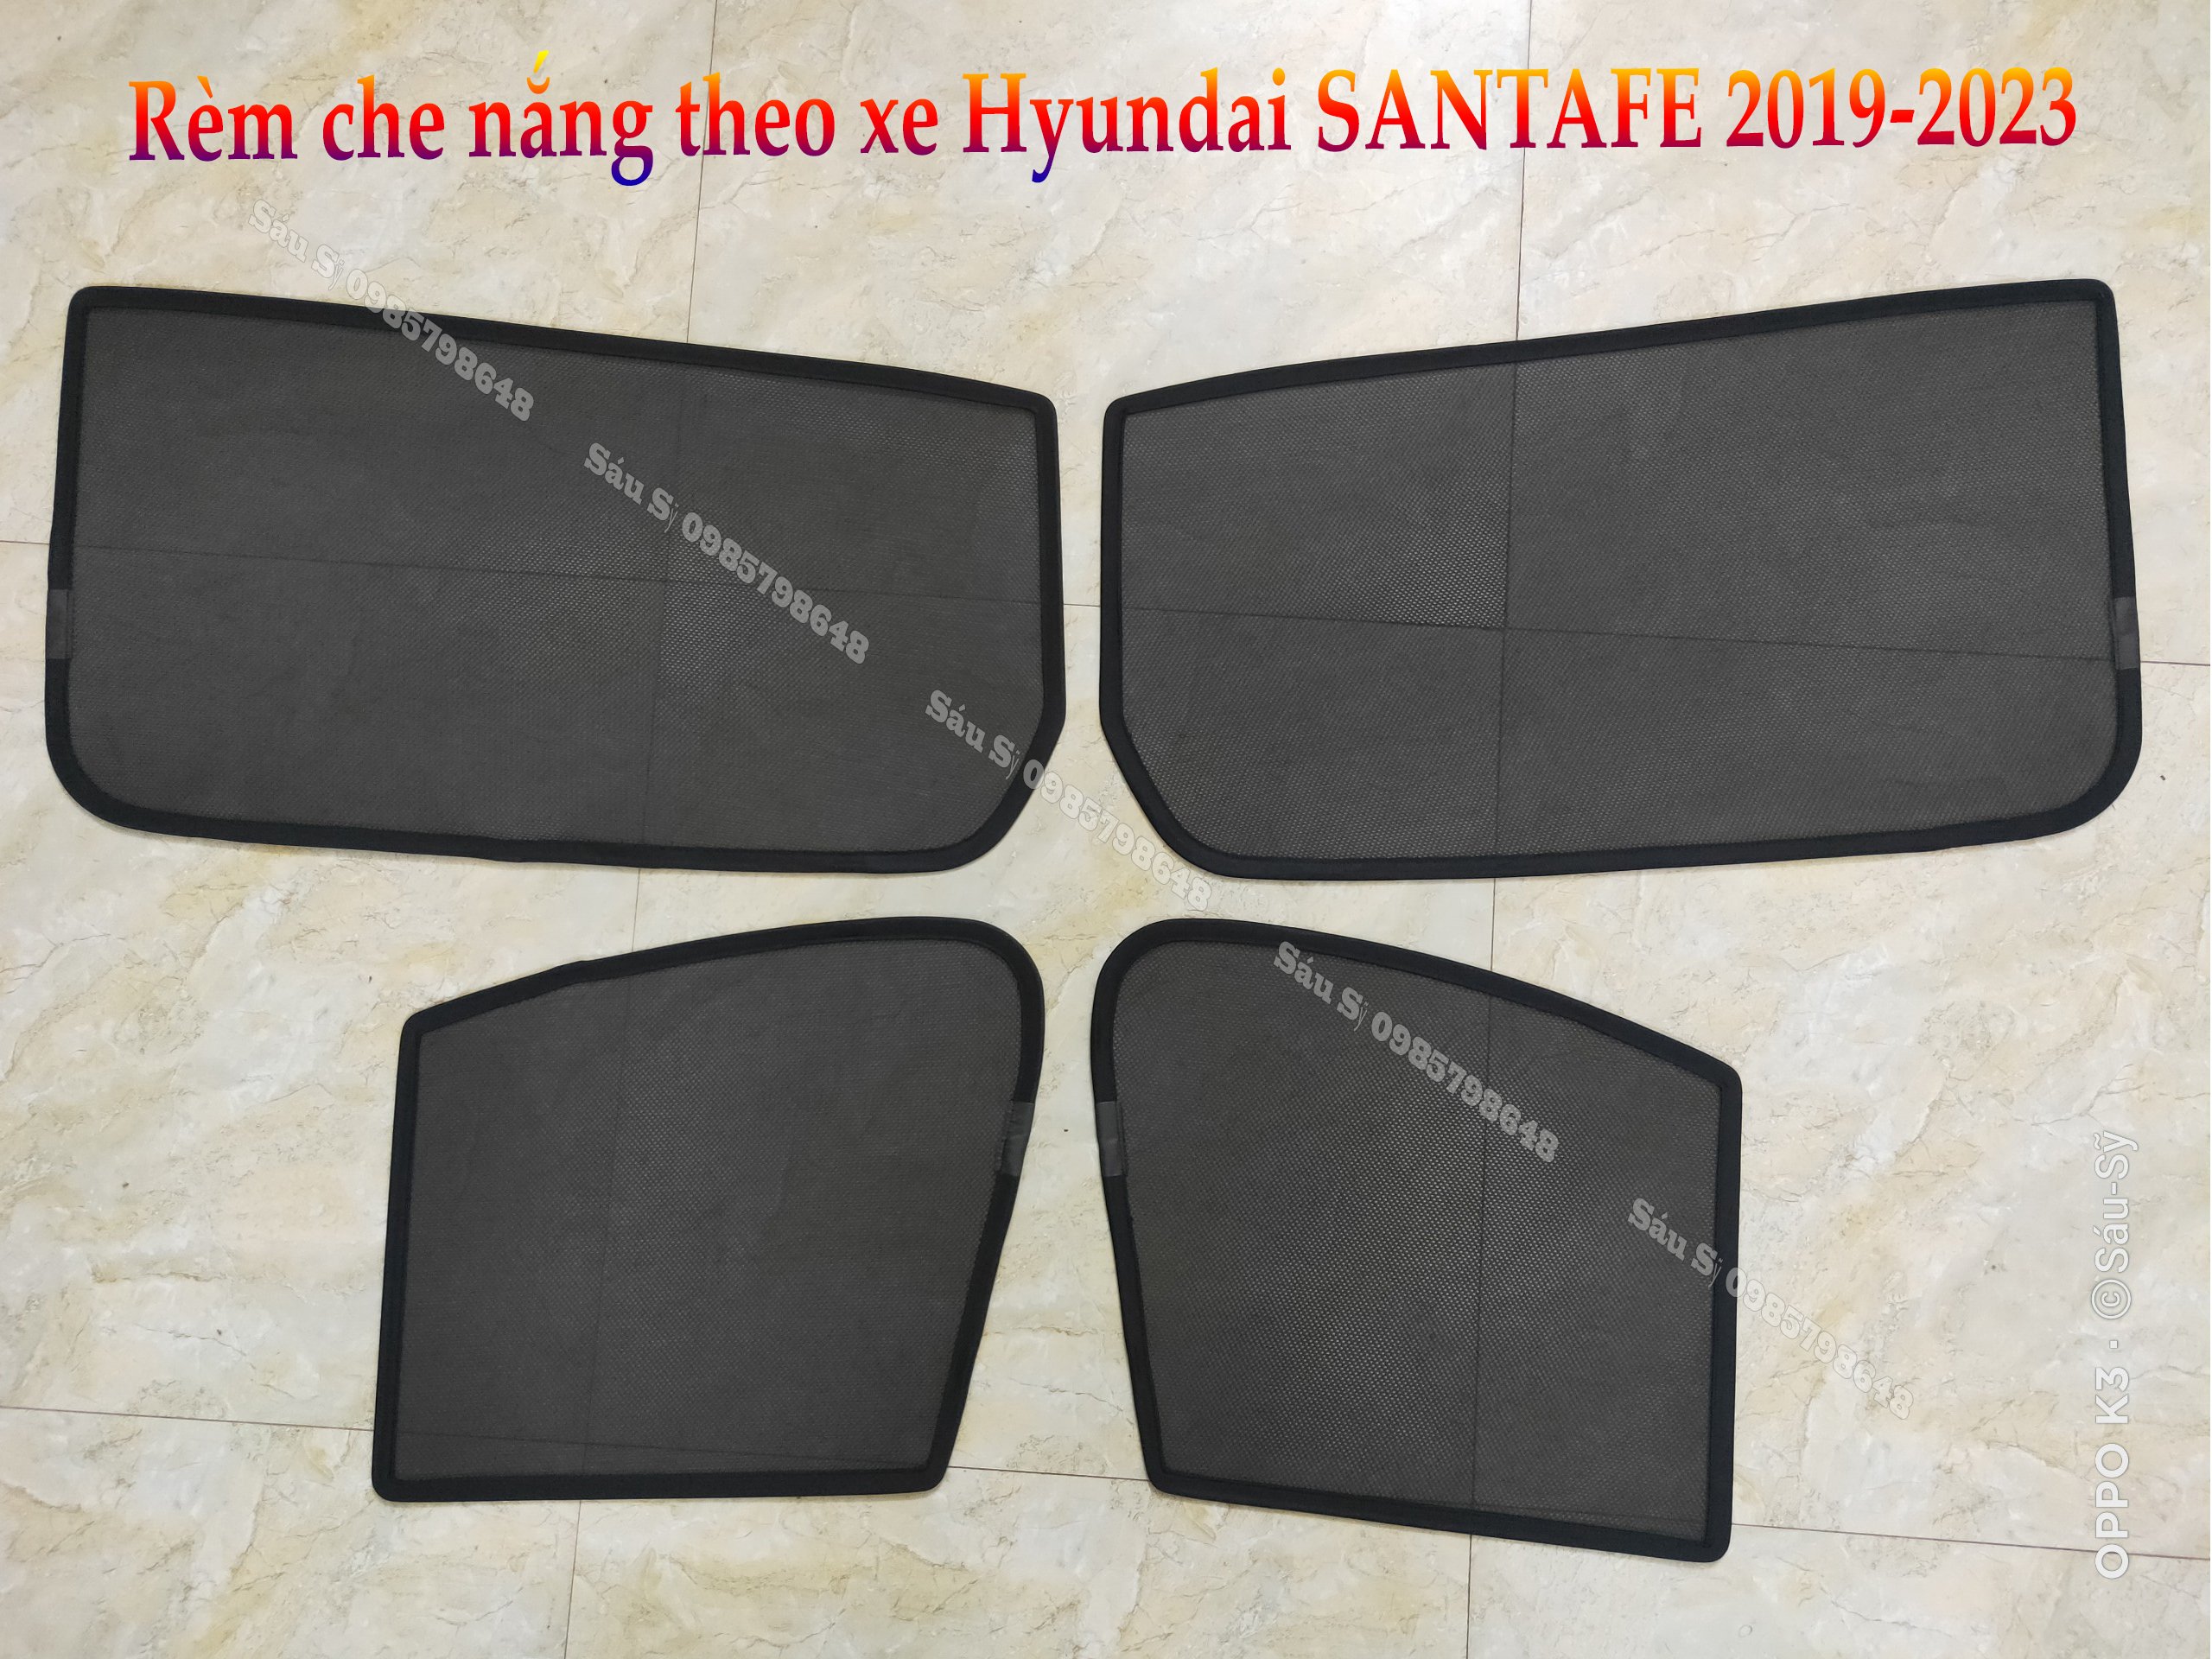 Bộ 4 tấm Rèm che nắng theo xe ô tô Hyundai SANTAFE 2019-2023, Tấm che nắng ô tô nam châm tự dính